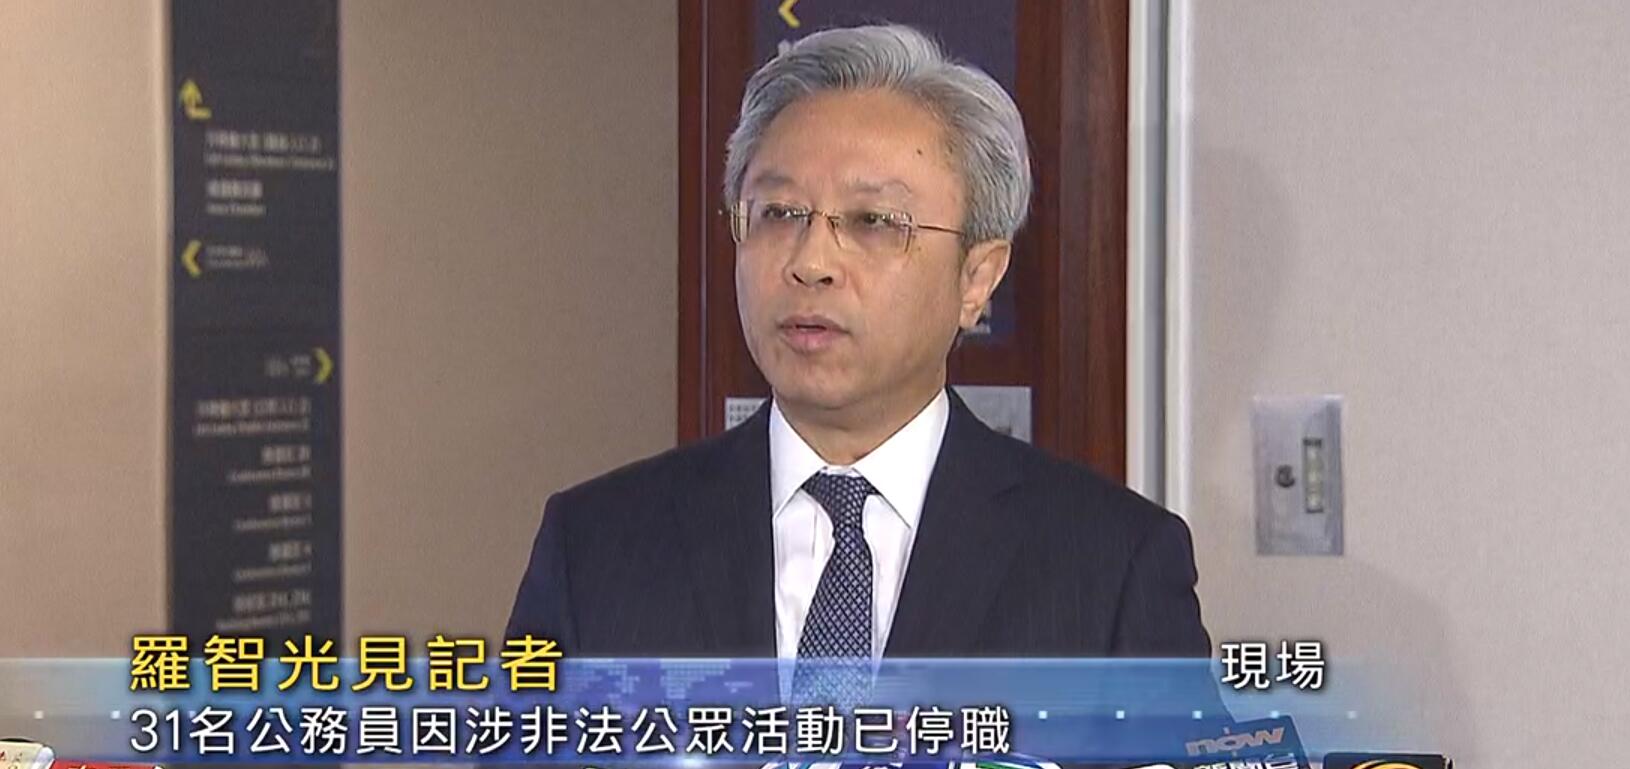 羅智光表示A截至去年底41名公務員因涉非法公眾活動被捕A其中31名已經停職C]電視截圖^